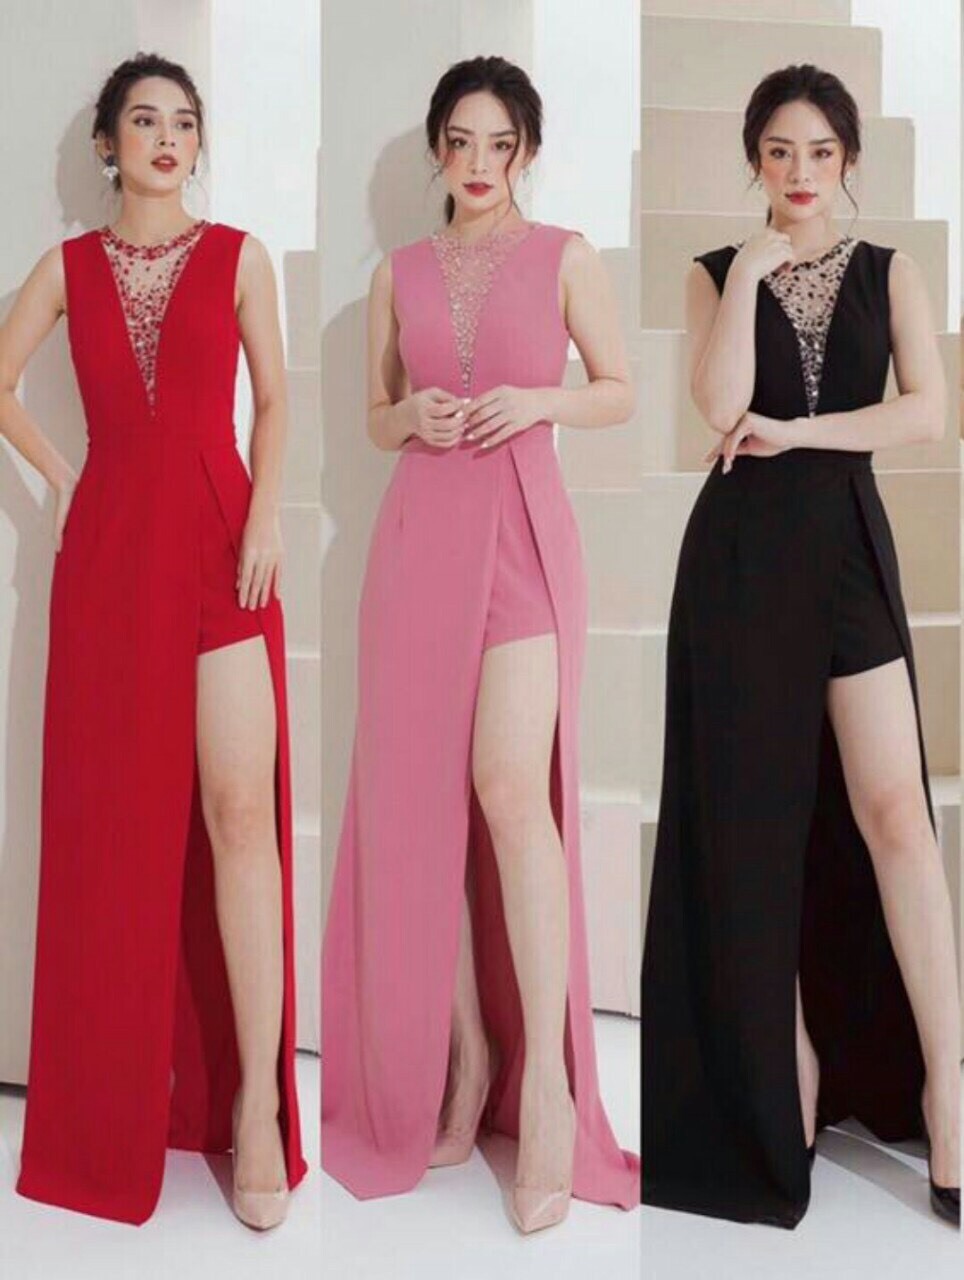 Giới thiệu 5 mẫu đầm dạ hội tuyệt vời phái đẹp nào cũng mua ngay - 3